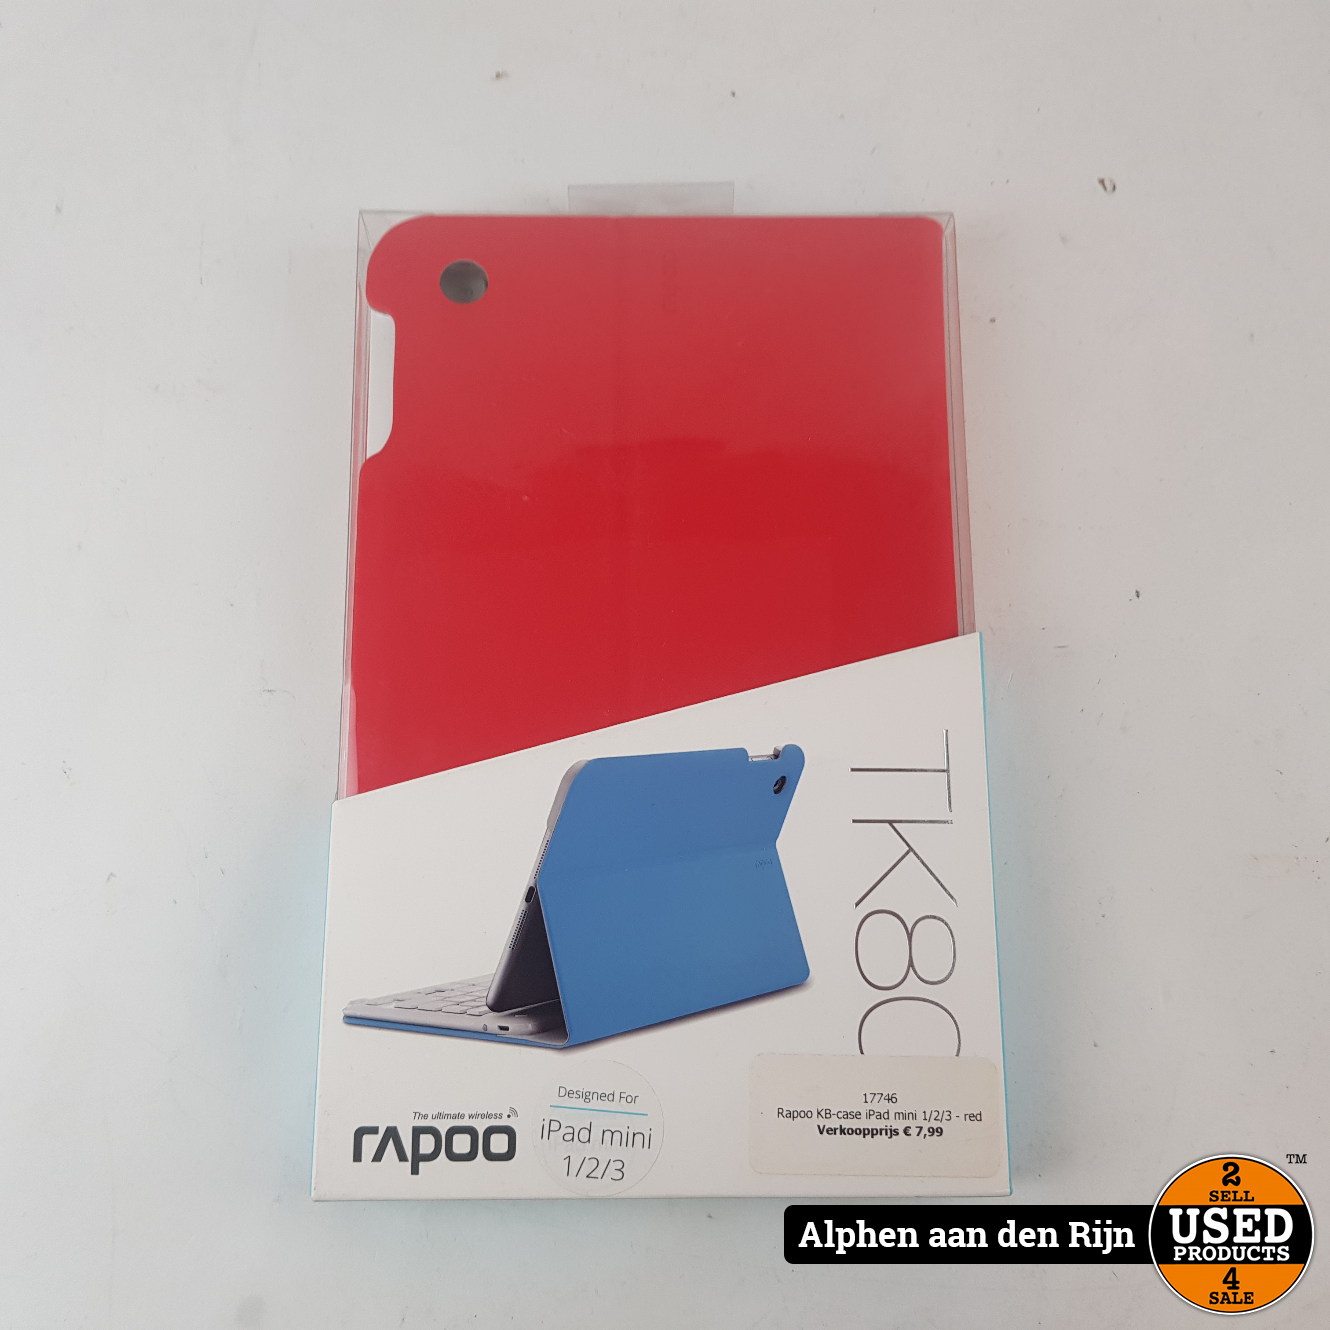 typist klauw Pardon Rapoo KB-case iPad mini 1/2/3 - red met toetsenbord - Used Products Alphen  aan den Rijn